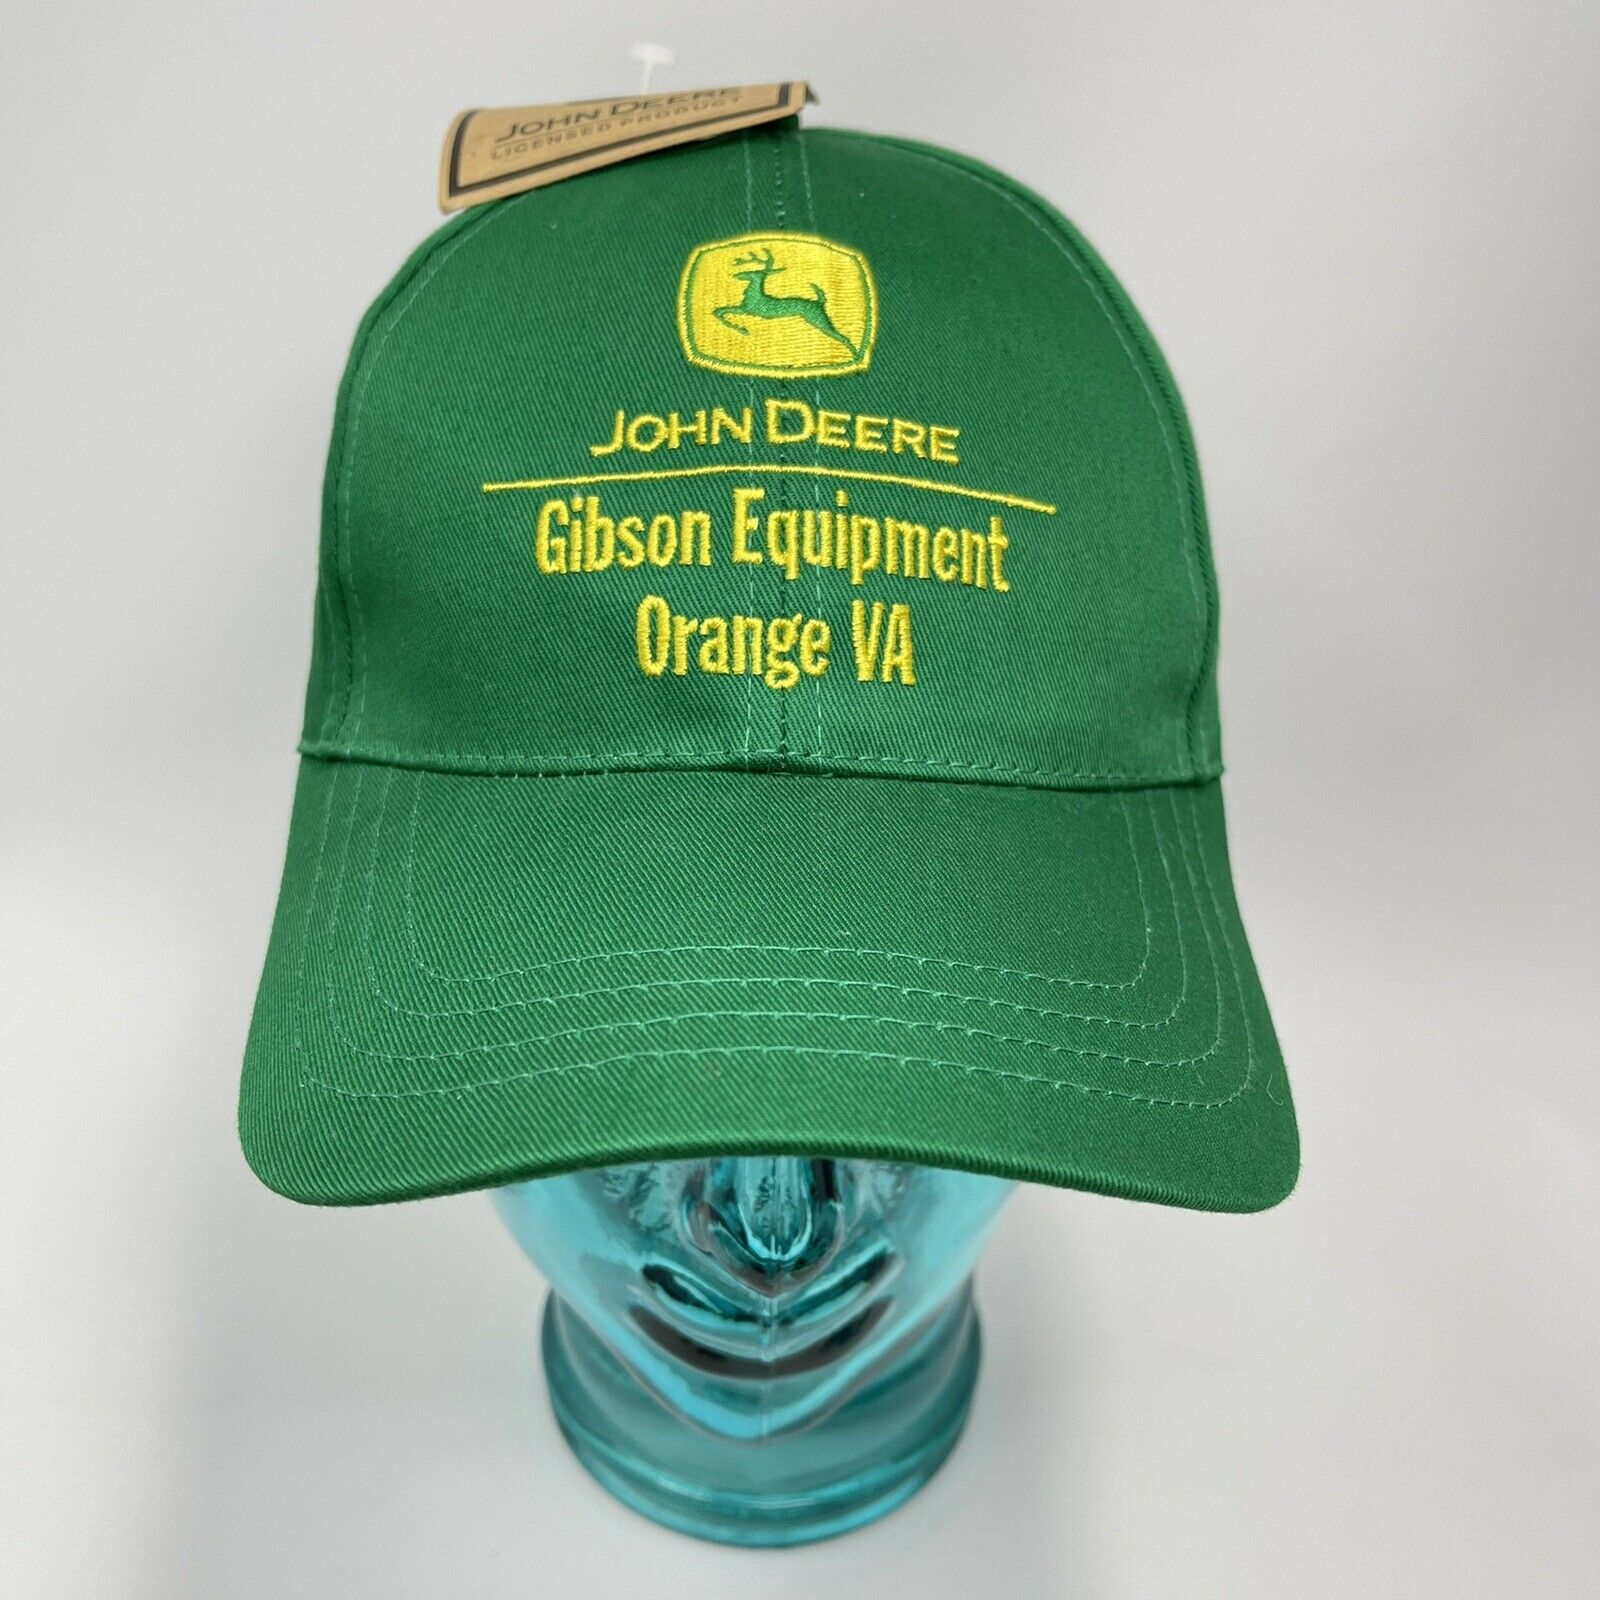 John Deere Gibson Equipment Orange Virginia Adjustable Hat Snapback Cap